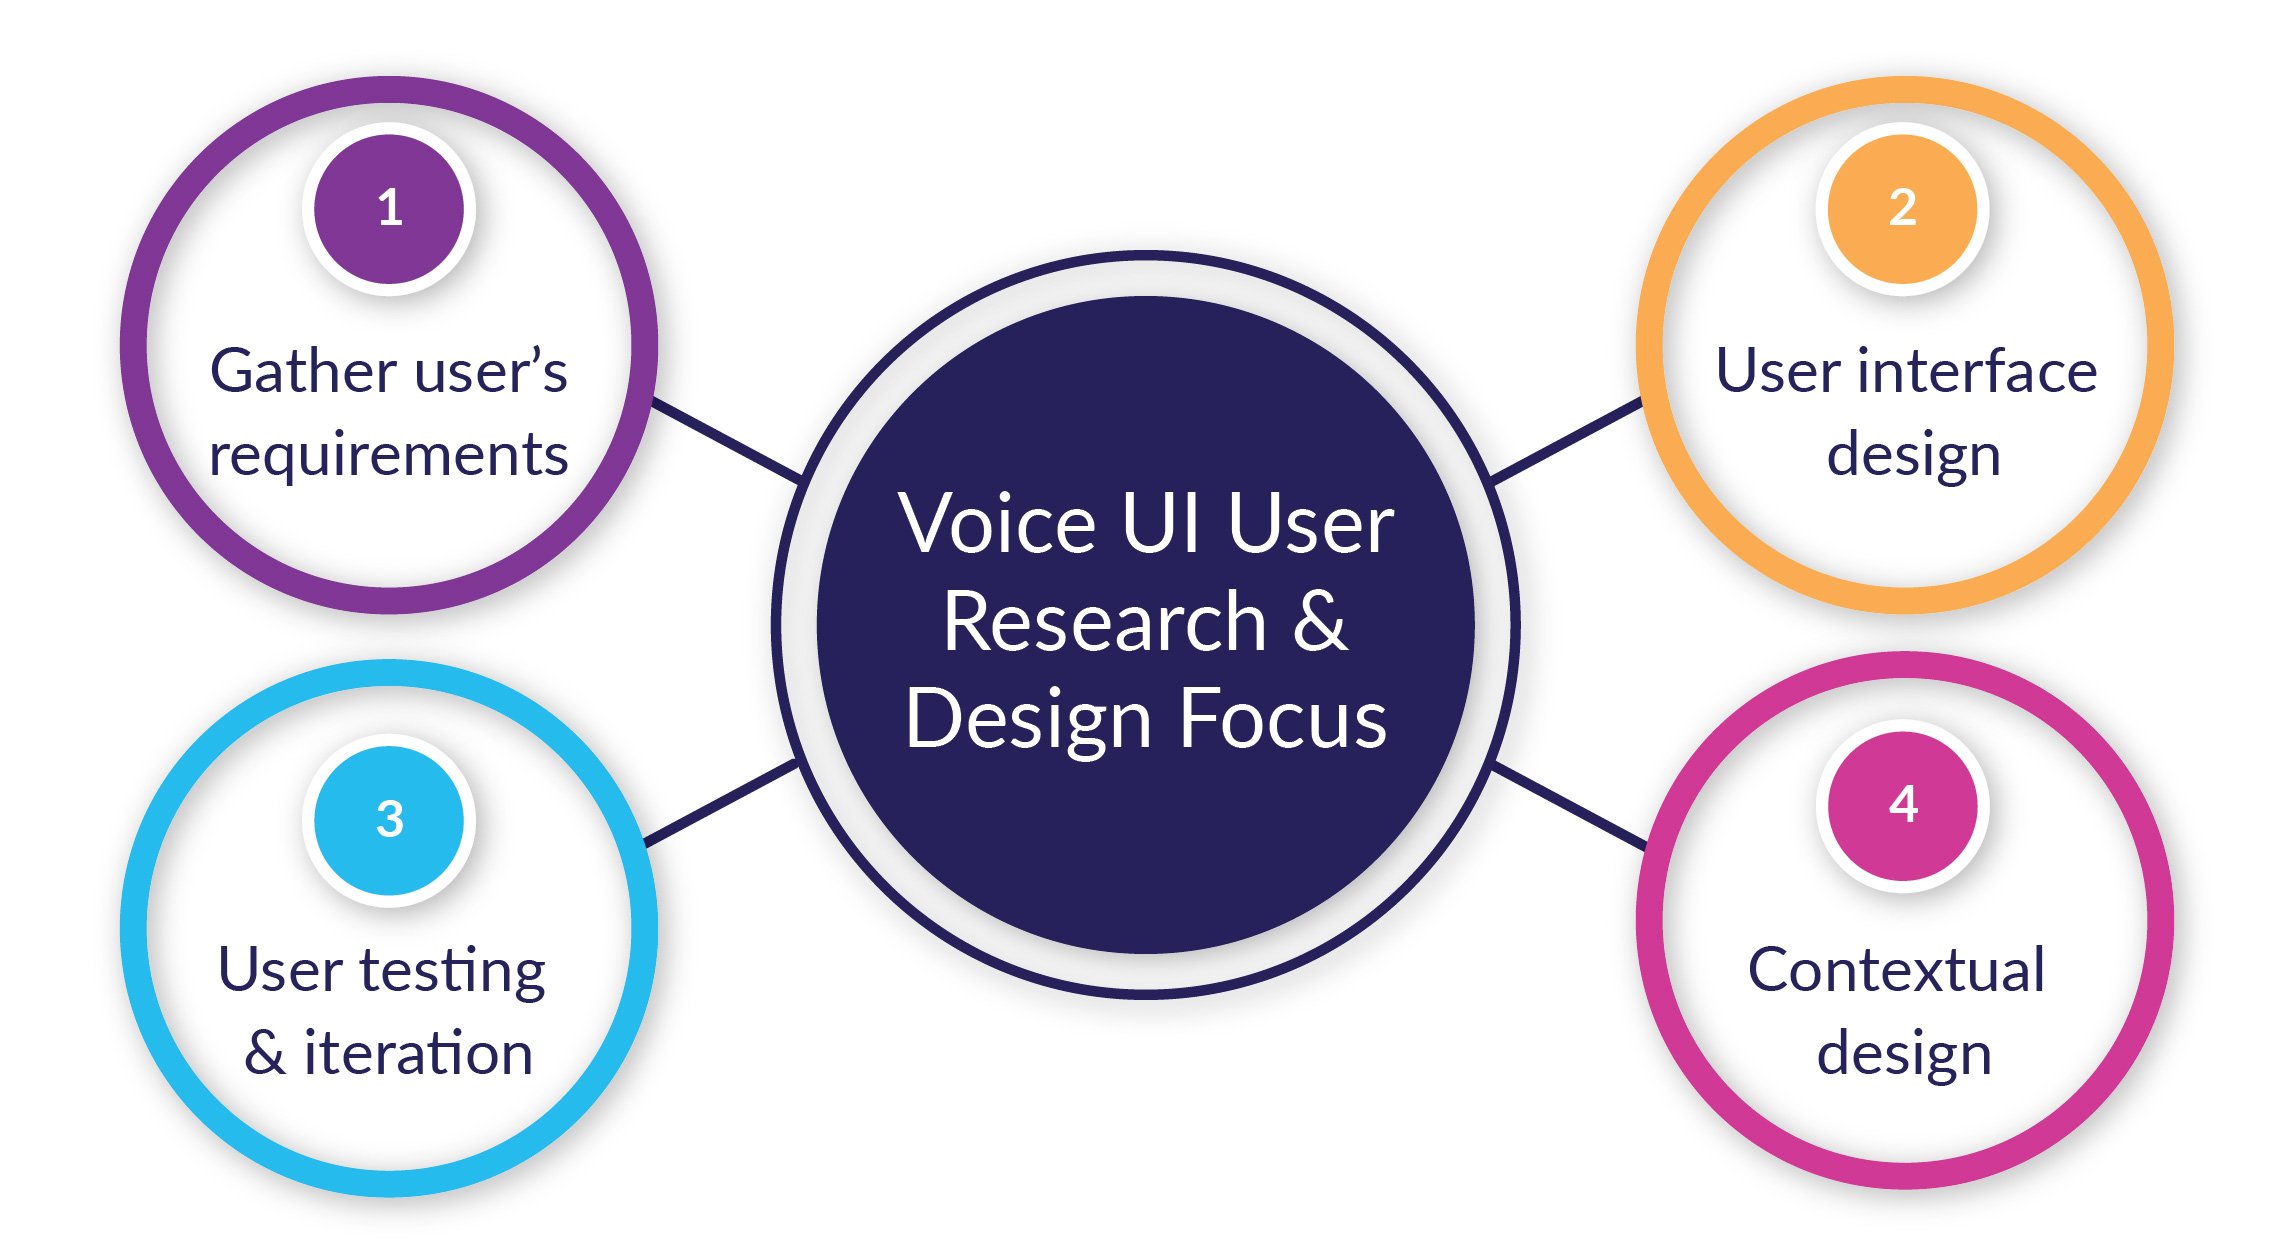 Voice UI User Research & Design Focus